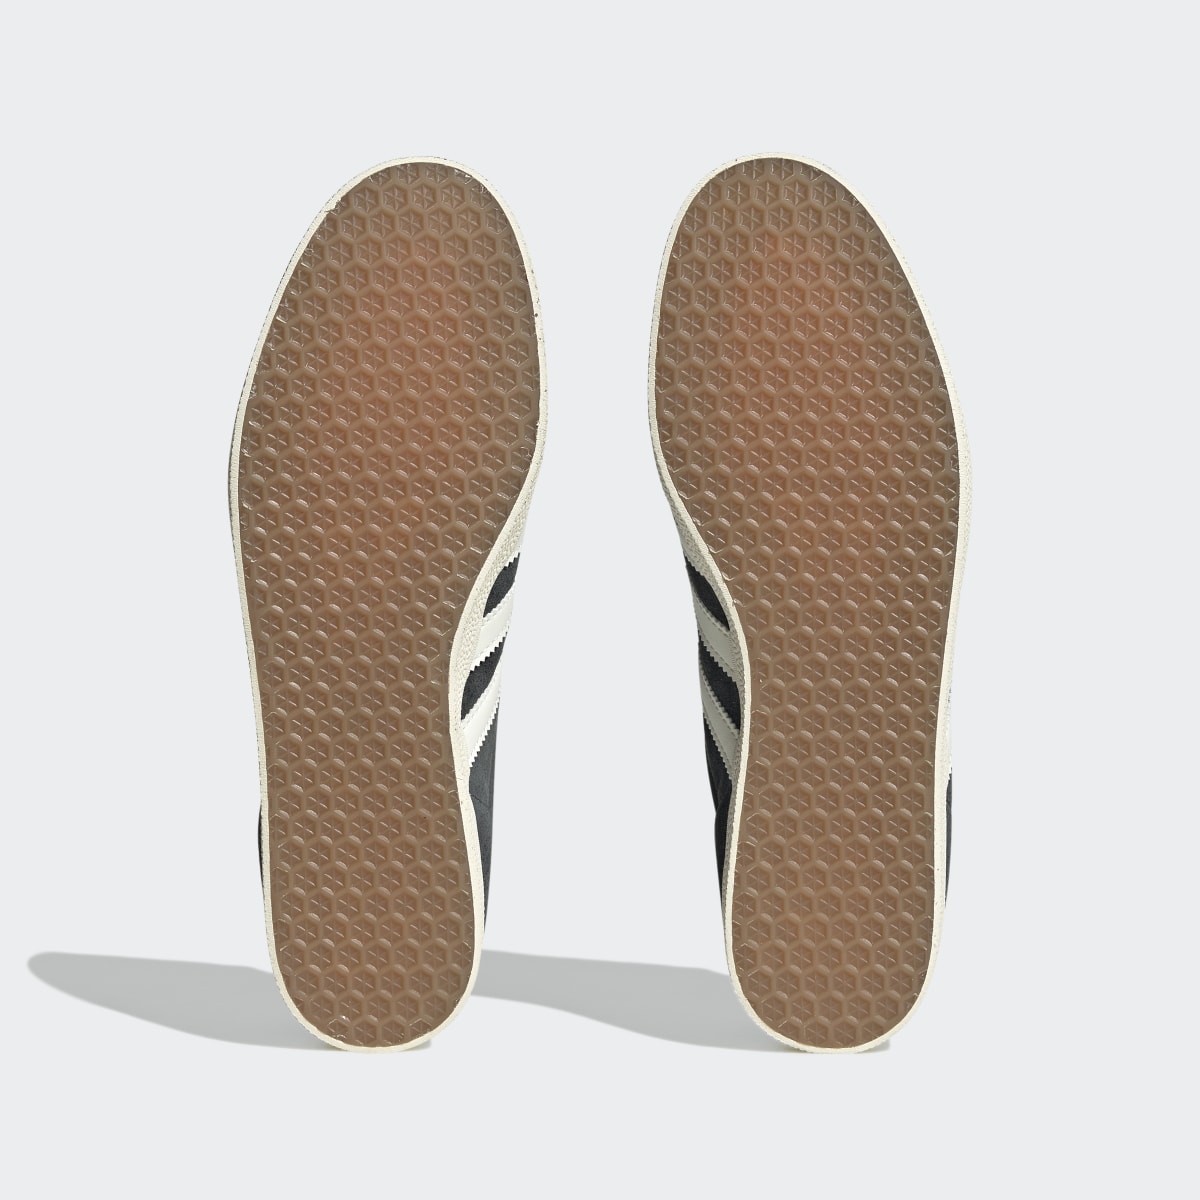 Adidas Gazelle Shoes. 4